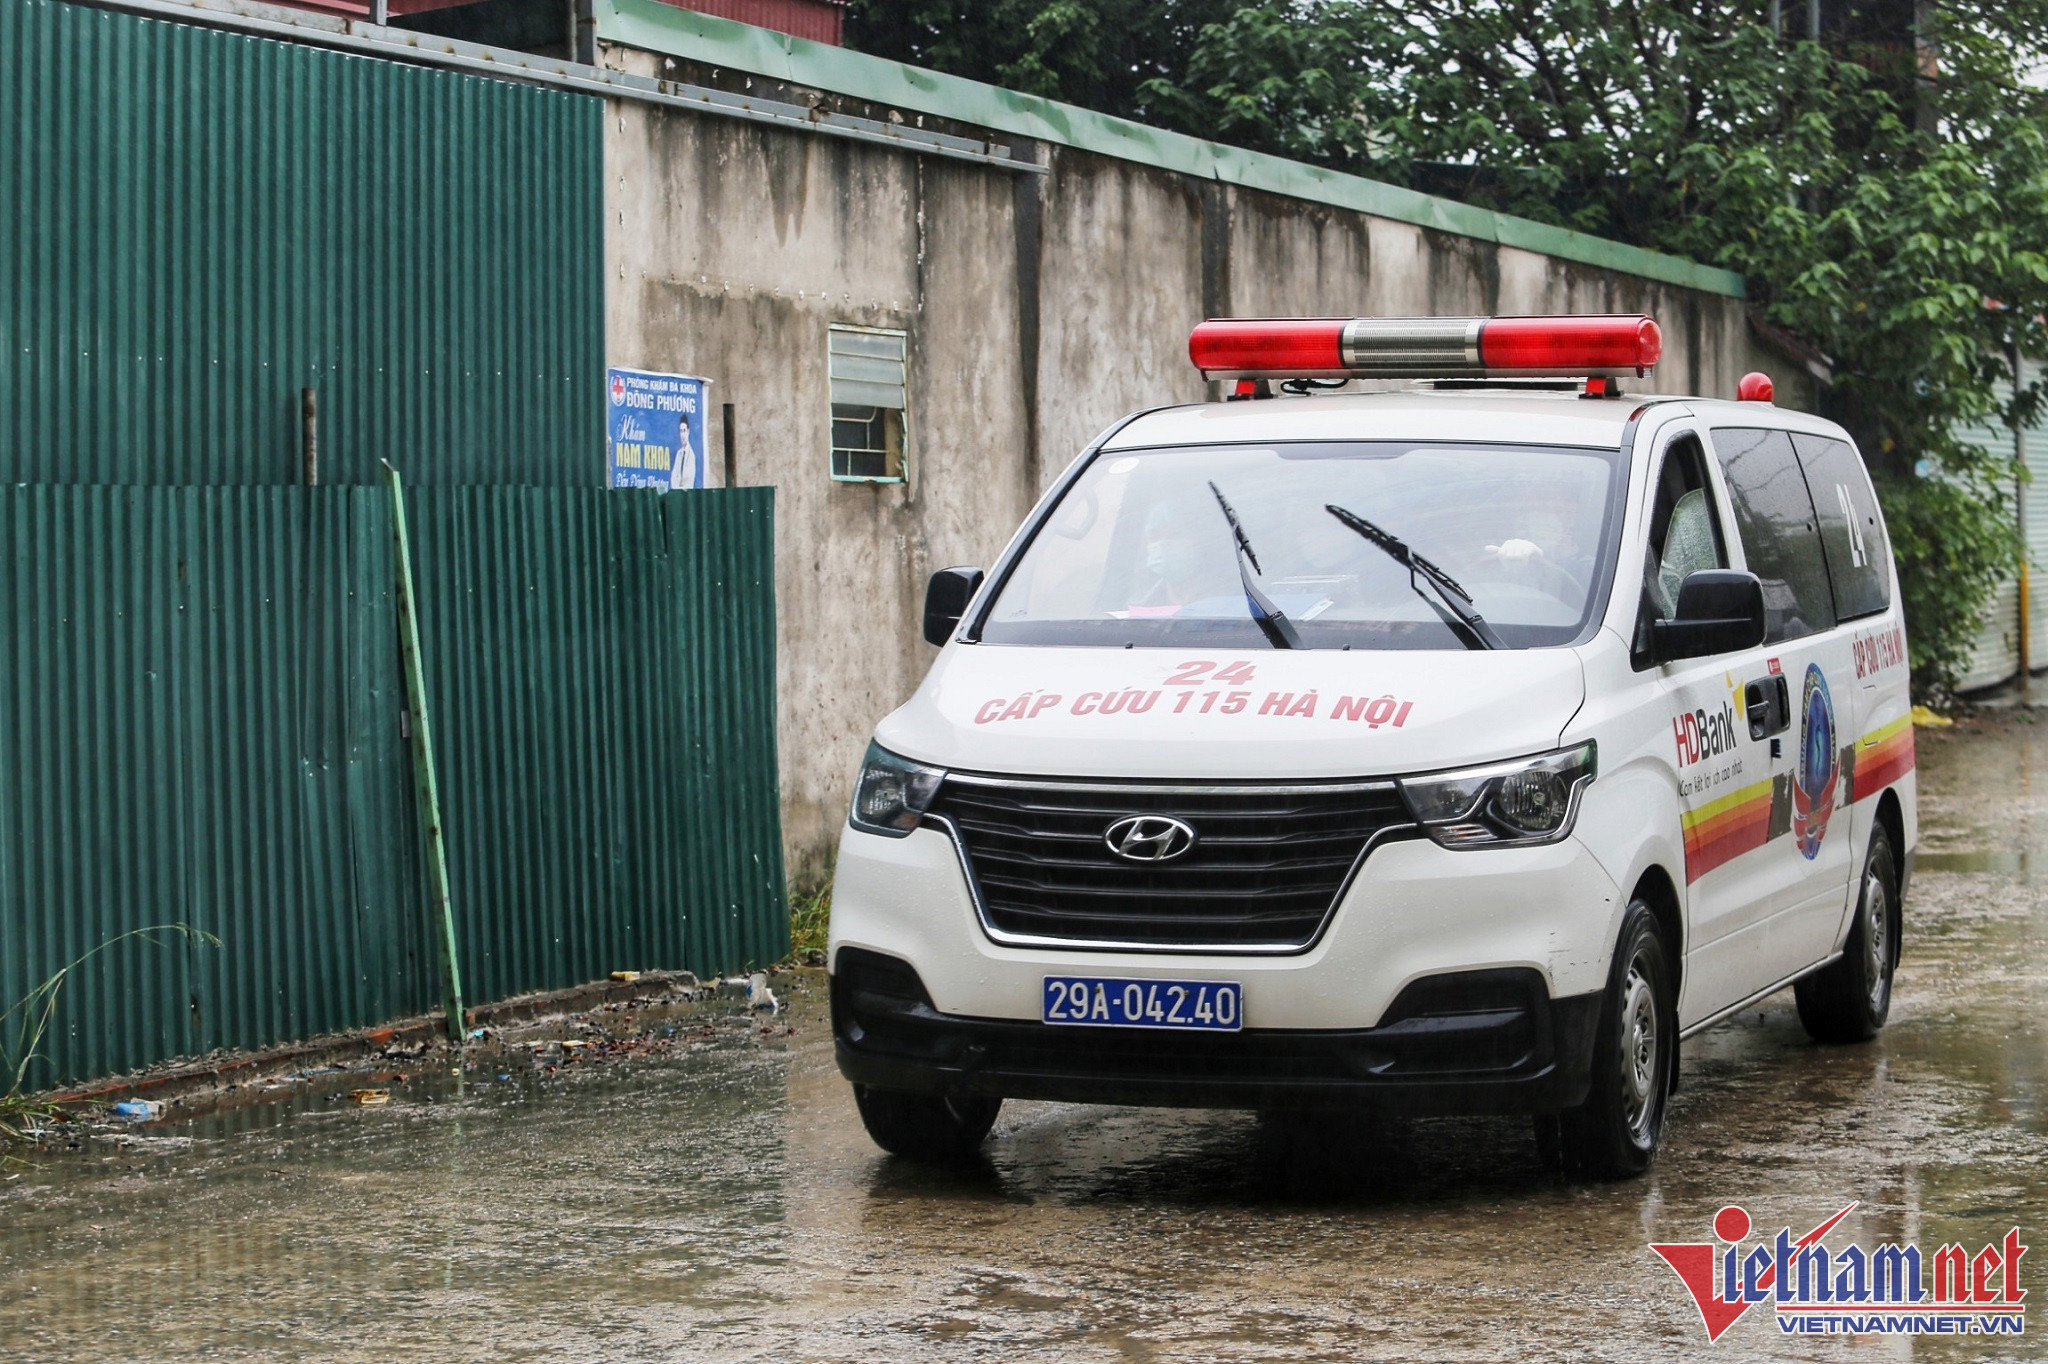 Vụ cháy kho ở Hà Nội: 1 người tử vong, 800m2 nhà xưởng bị thiêu rụi-3